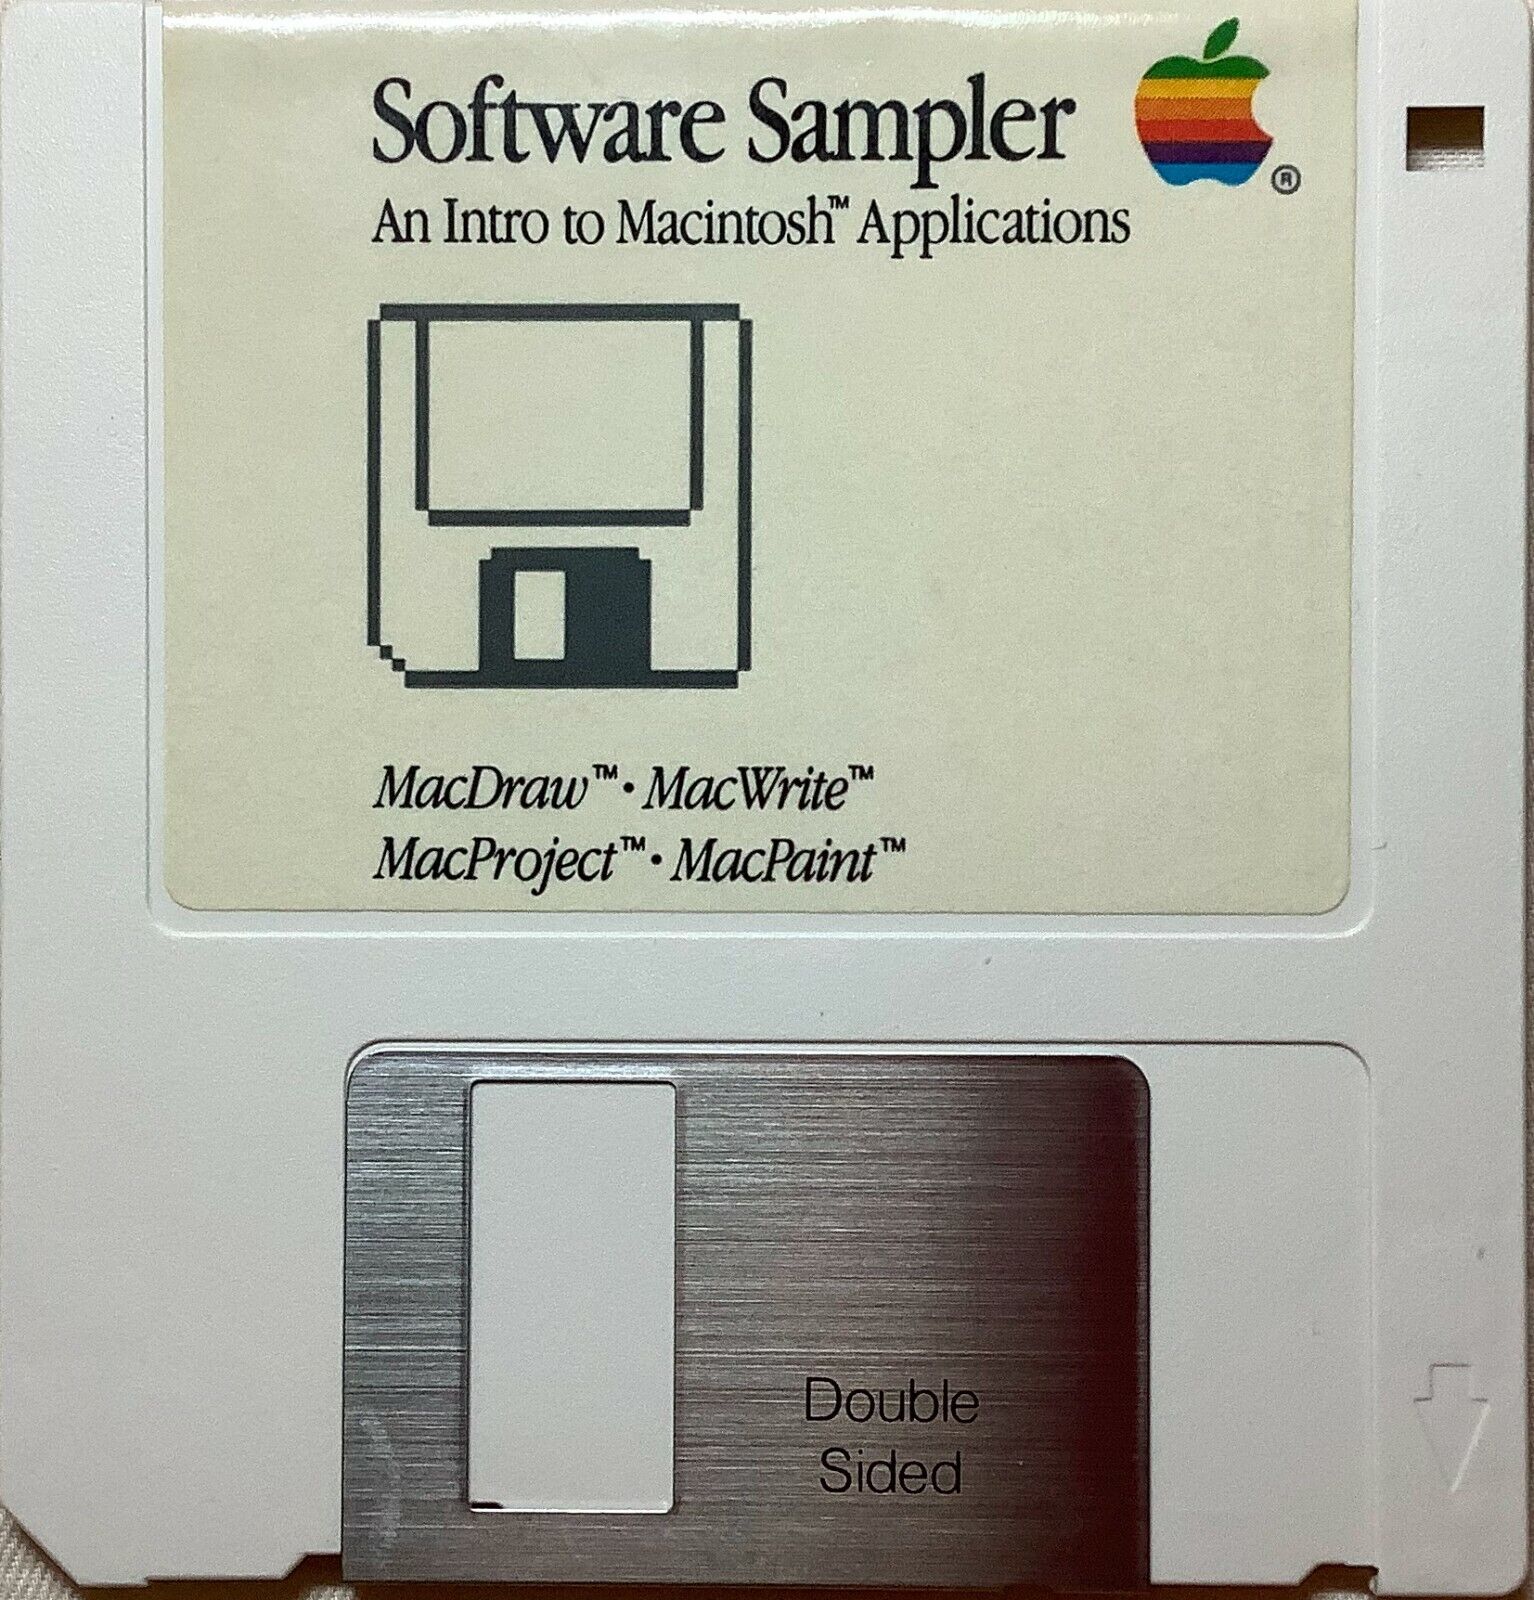 Macintosh Software Sampler: An Intro To Macintosh Applications - 690-5061 - A 